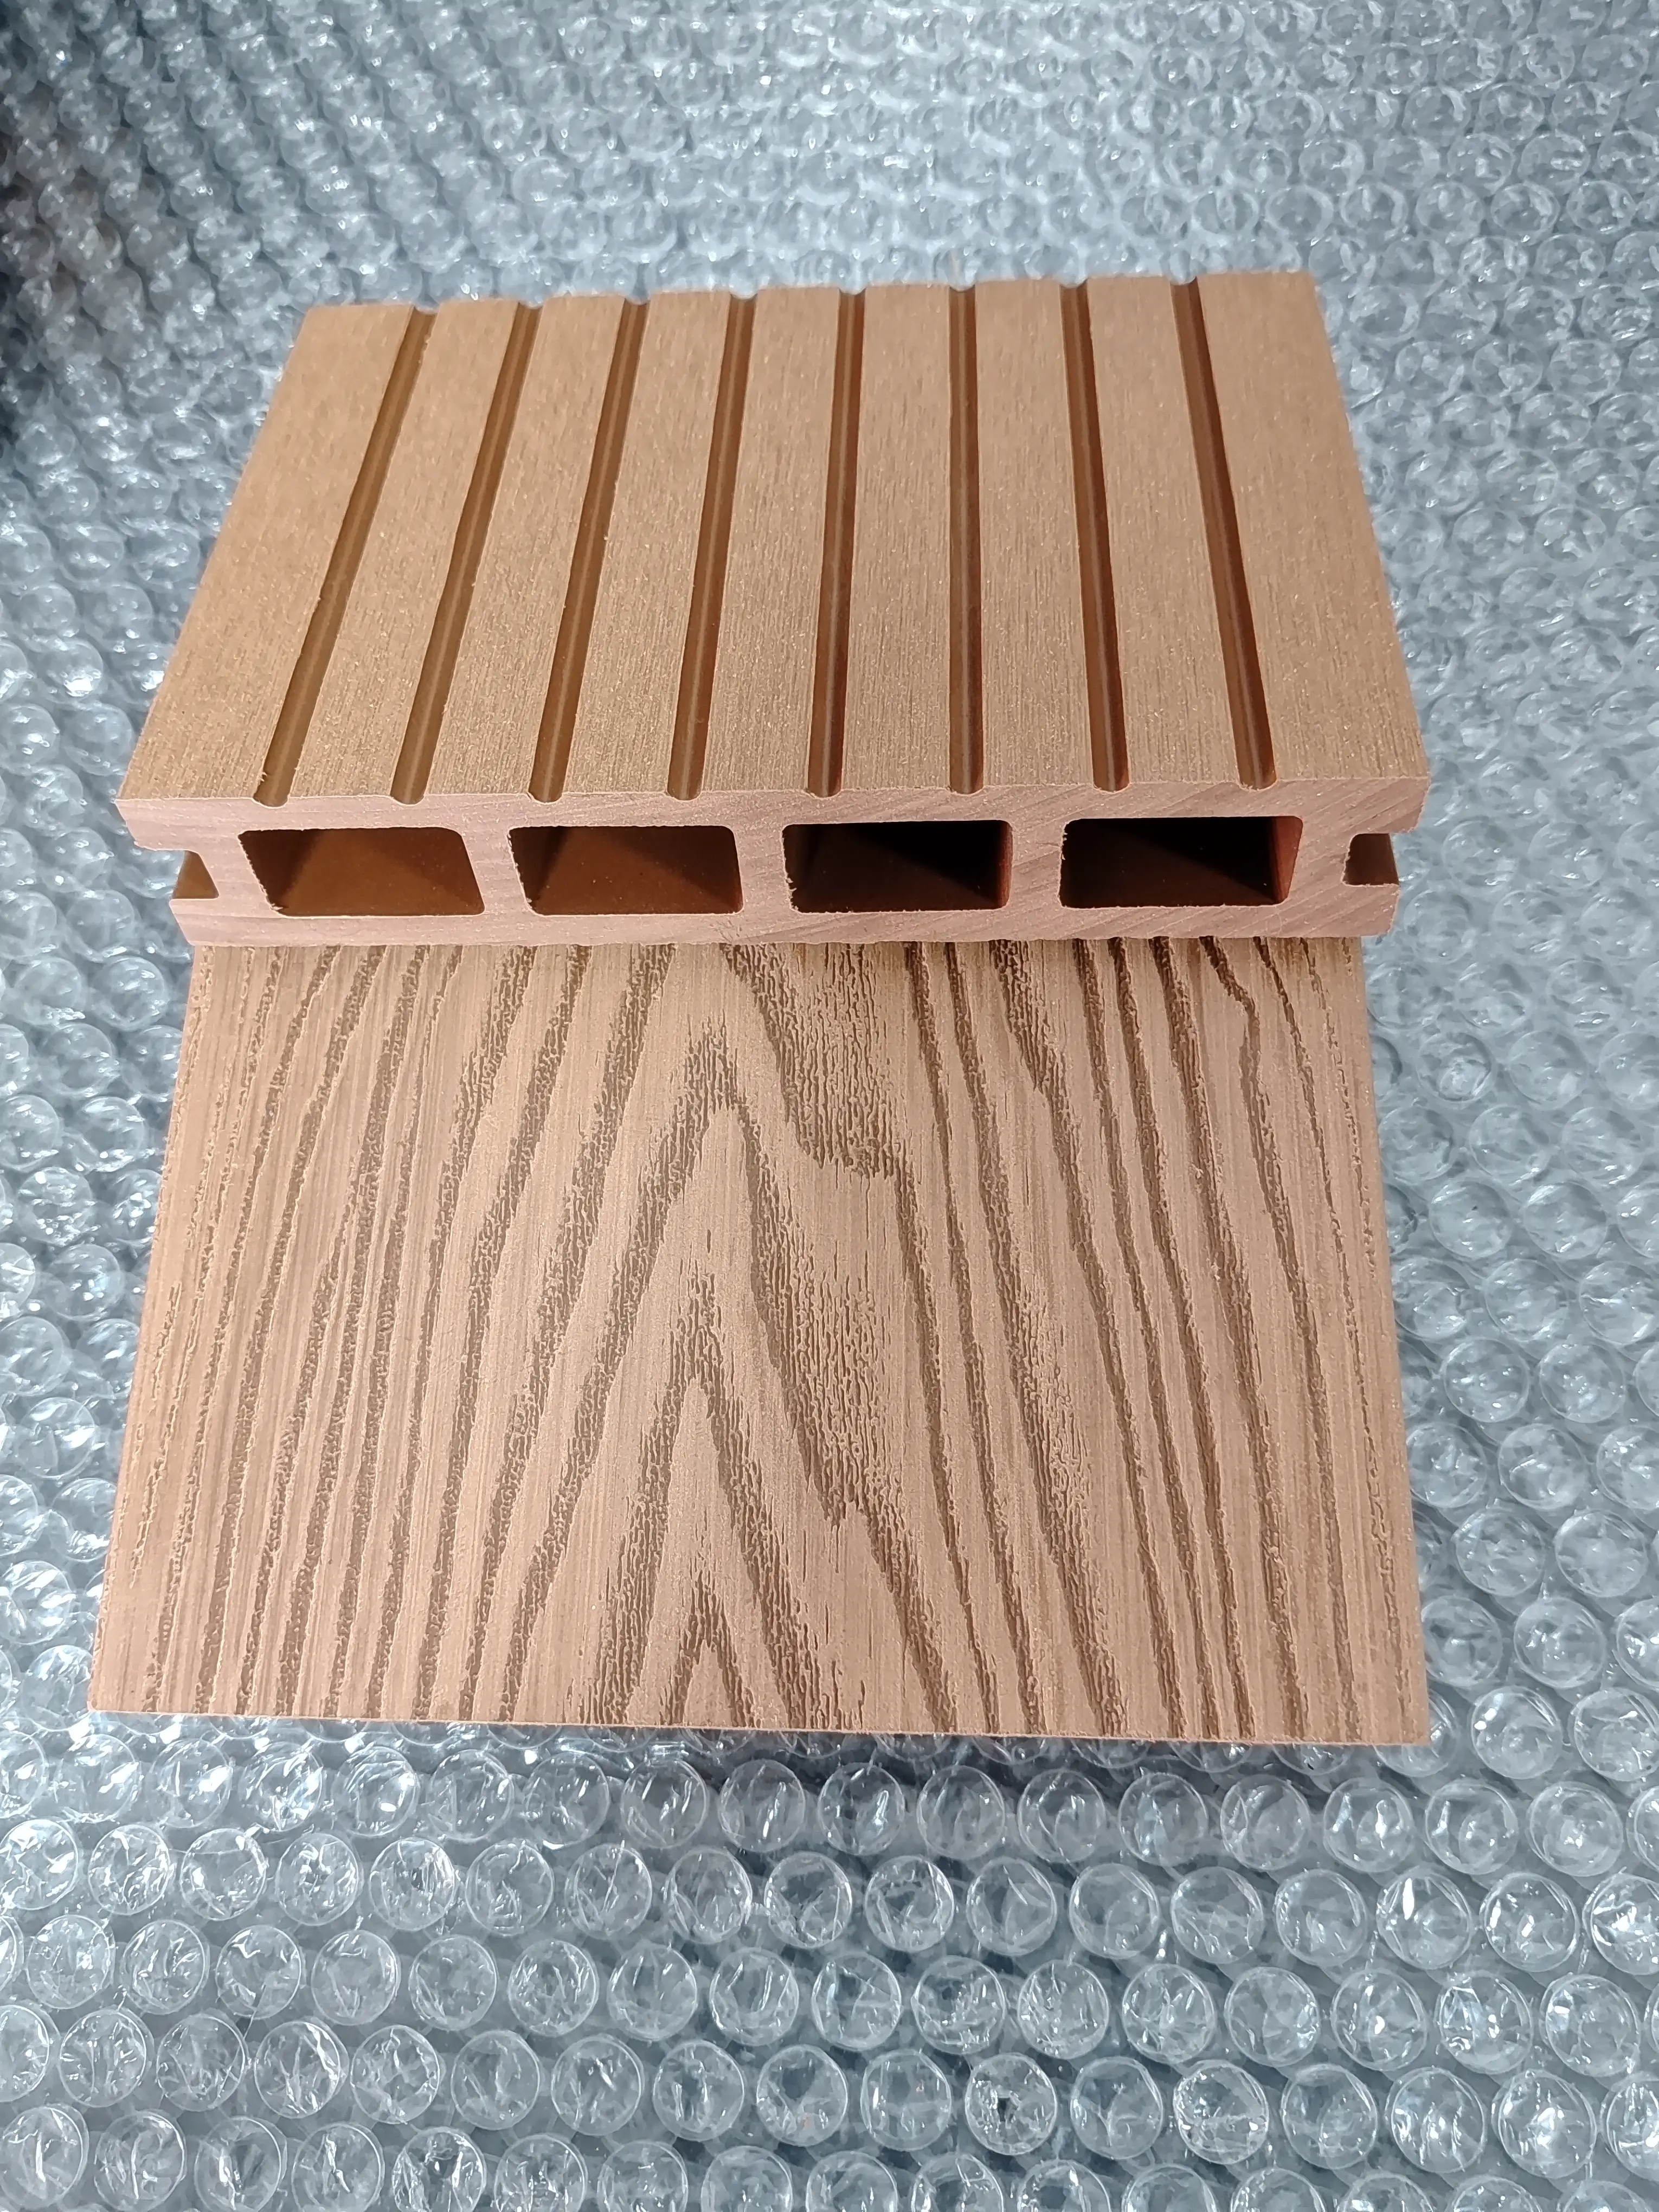 Piscina de madeira wpc deck de madeira-plástico composto de grãos de madeira 3D de alta qualidade para exterior